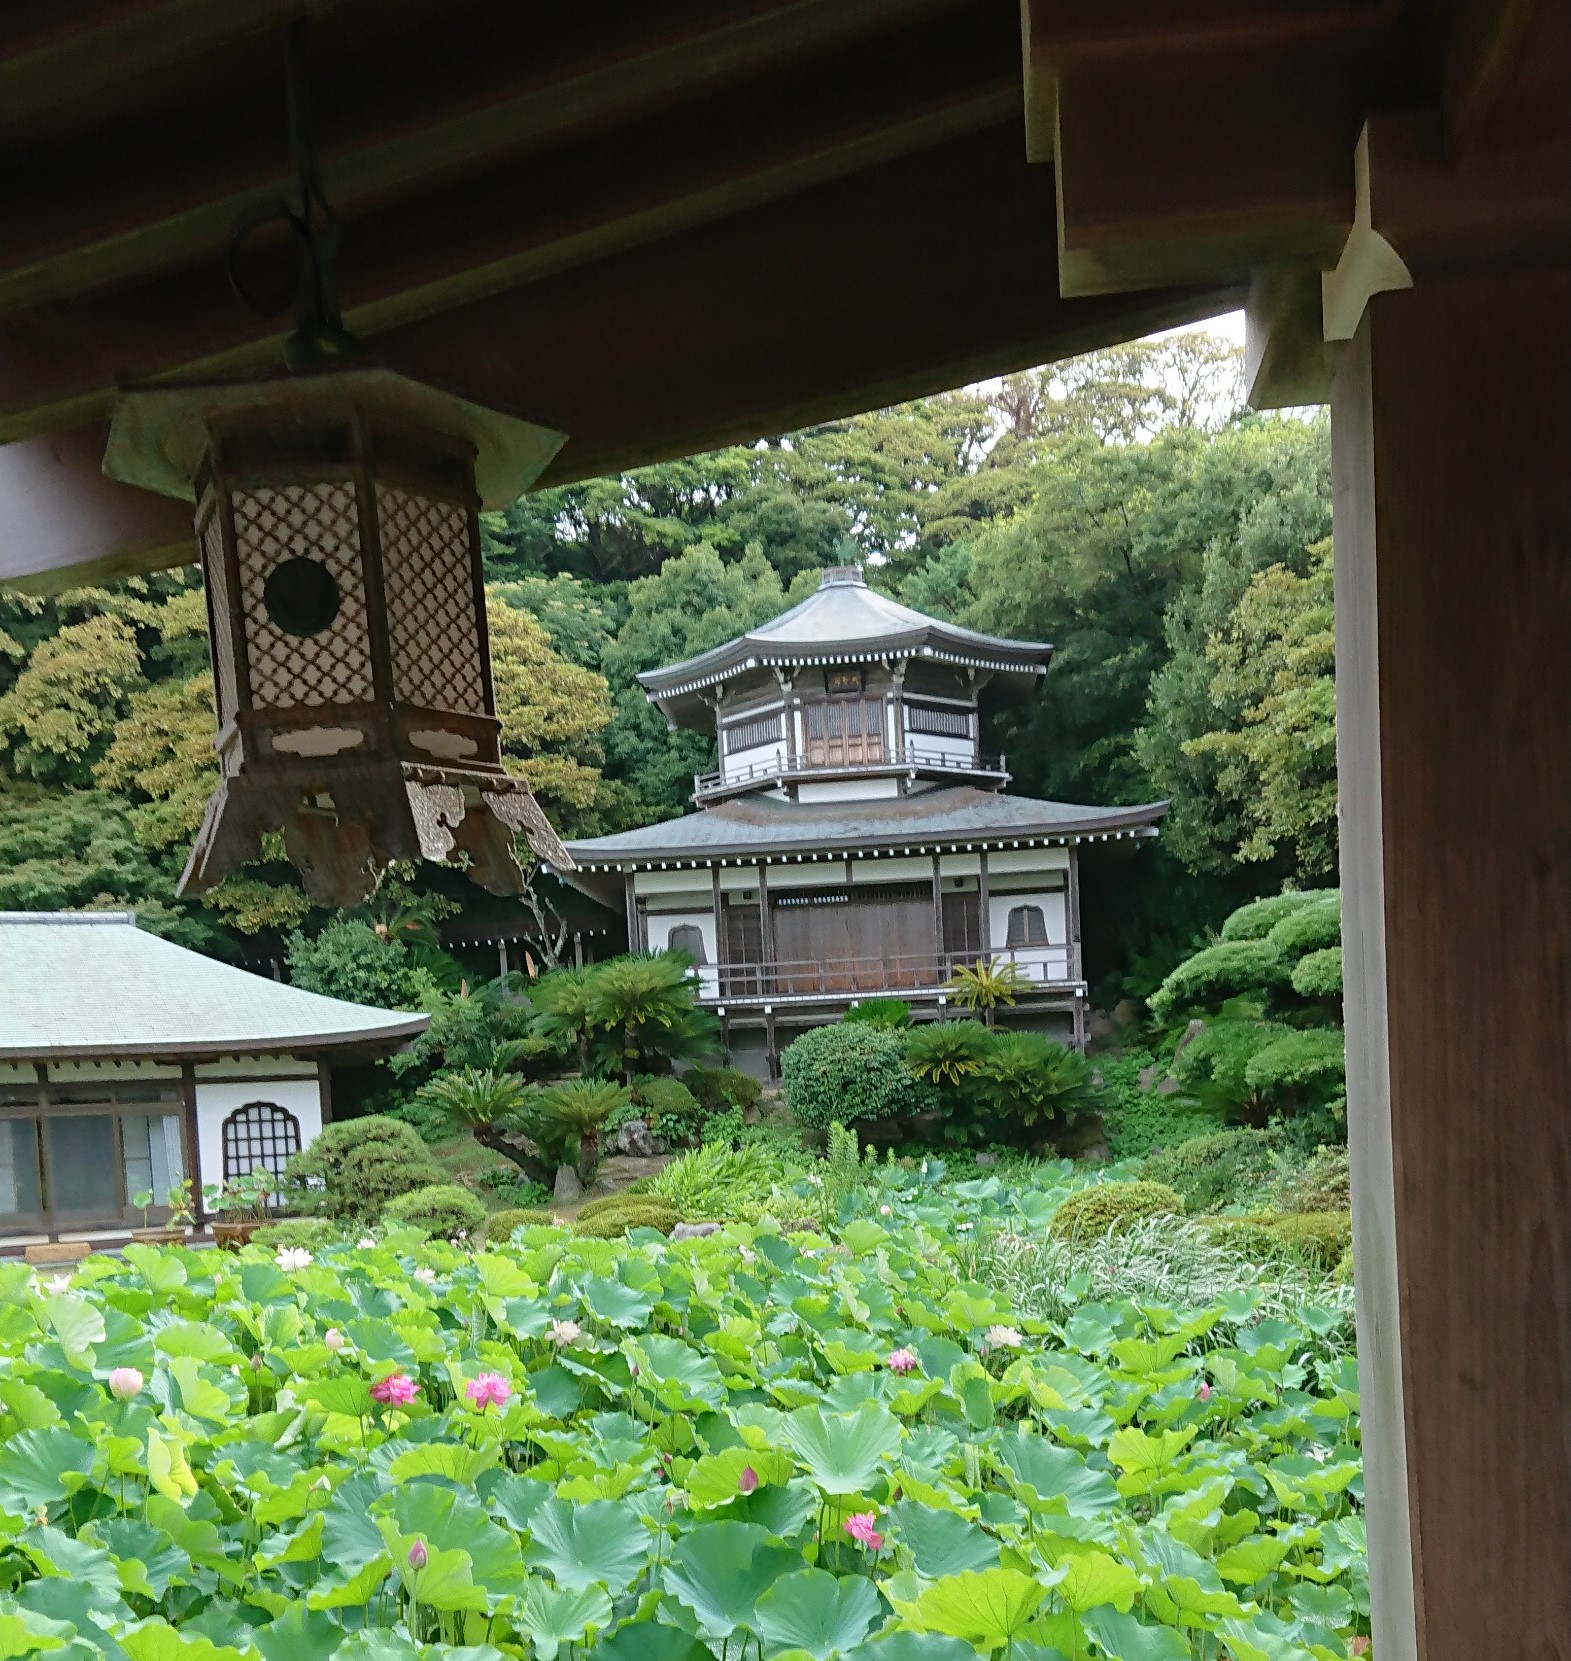  Komyoji Temple